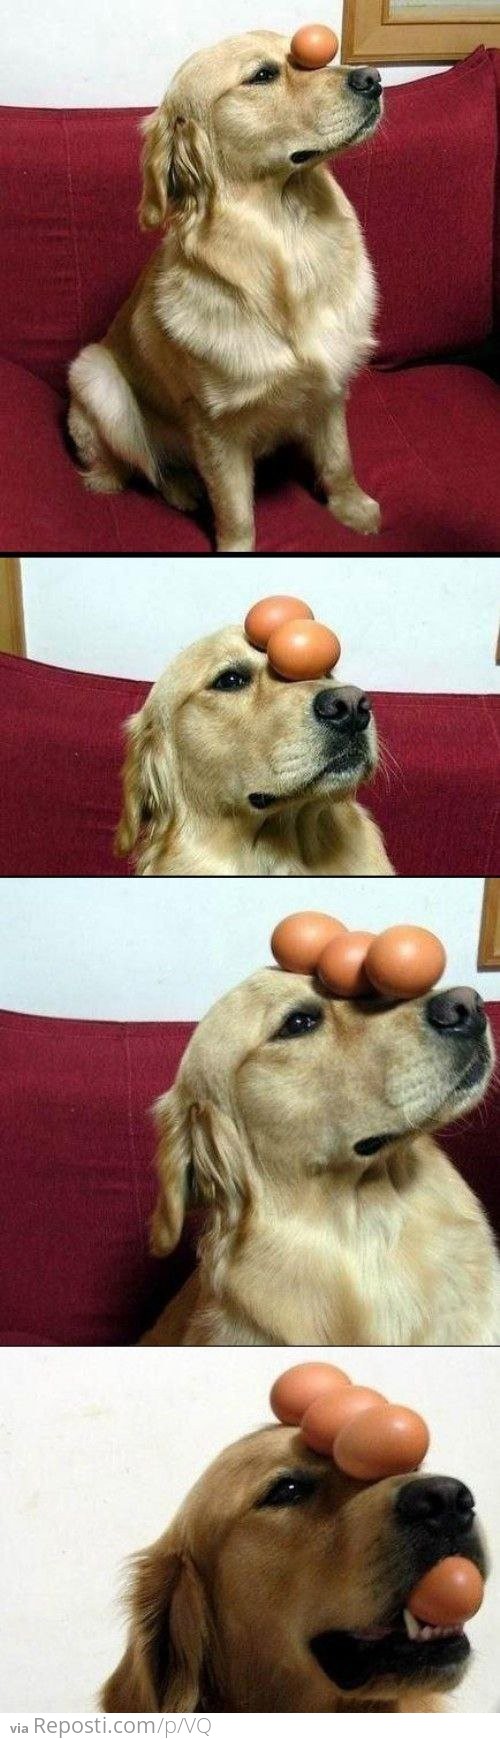 The Egg Ballancing Dog